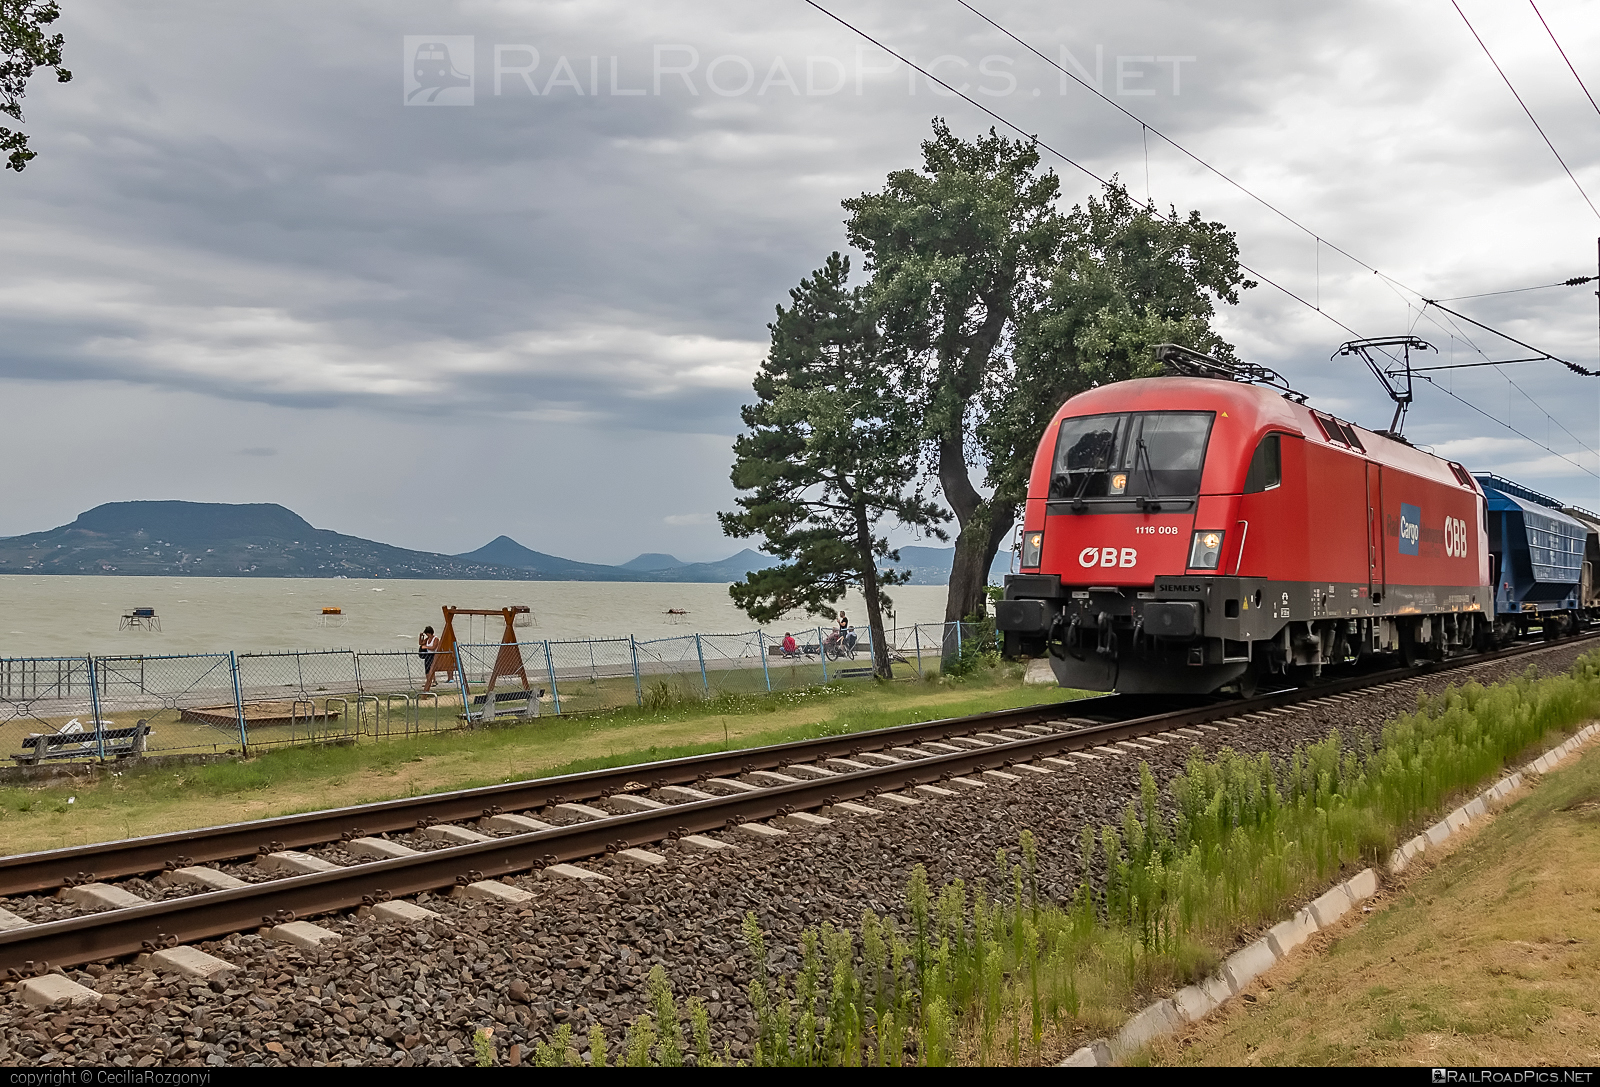 Siemens ES 64 U2 - 1116 008 operated by Rail Cargo Hungaria ZRt. #es64 #es64u2 #eurosprinter #hopperwagon #obb #osterreichischebundesbahnen #rch #siemens #siemensEs64 #siemensEs64u2 #siemenstaurus #taurus #tauruslocomotive